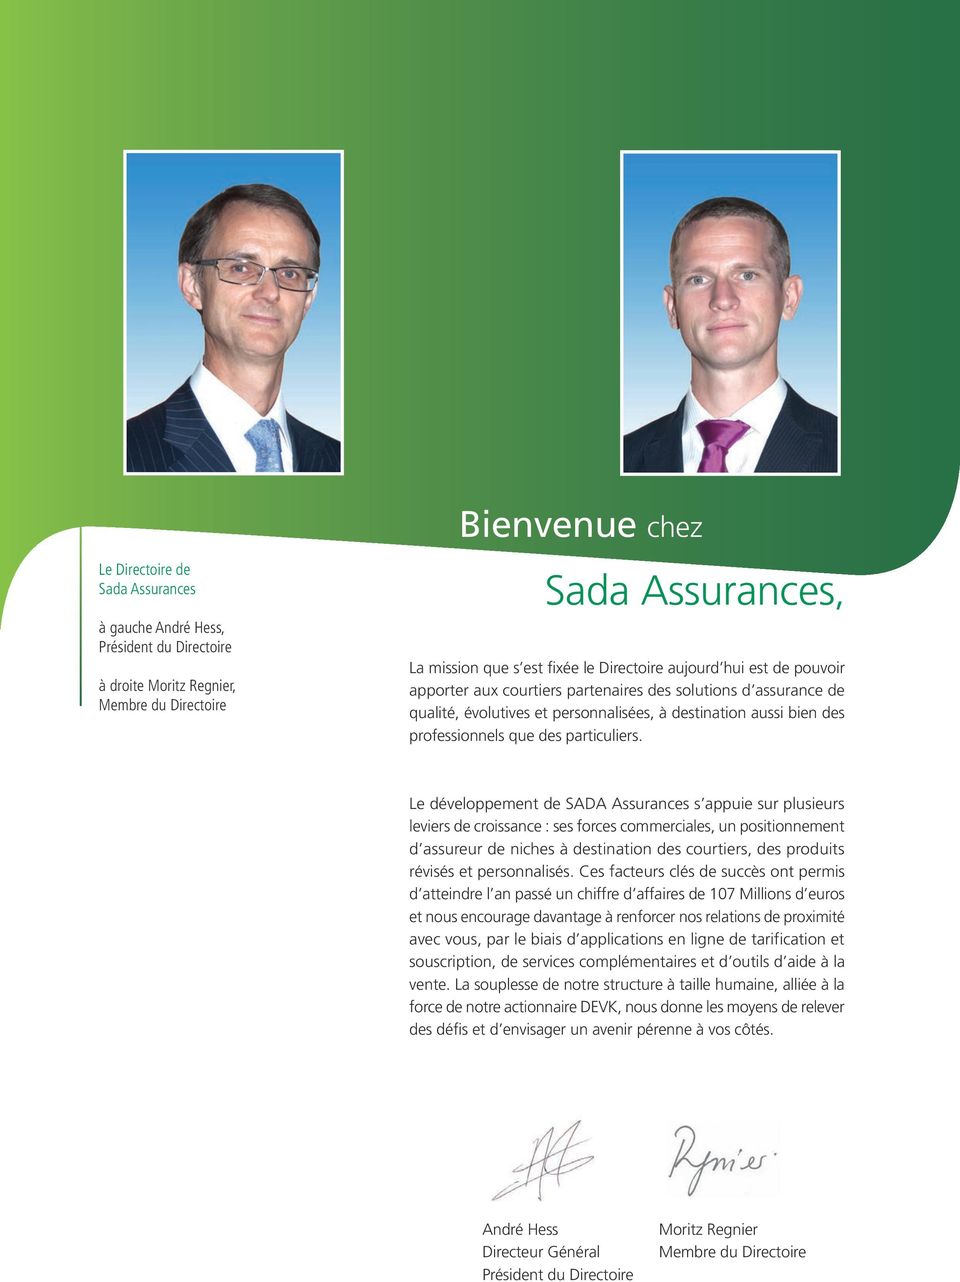 Le développement de SADA Assurances s appuie sur plusieurs leviers de croissance : ses forces commerciales, un positionnement d assureur de niches à destination des courtiers, des produits révisés et